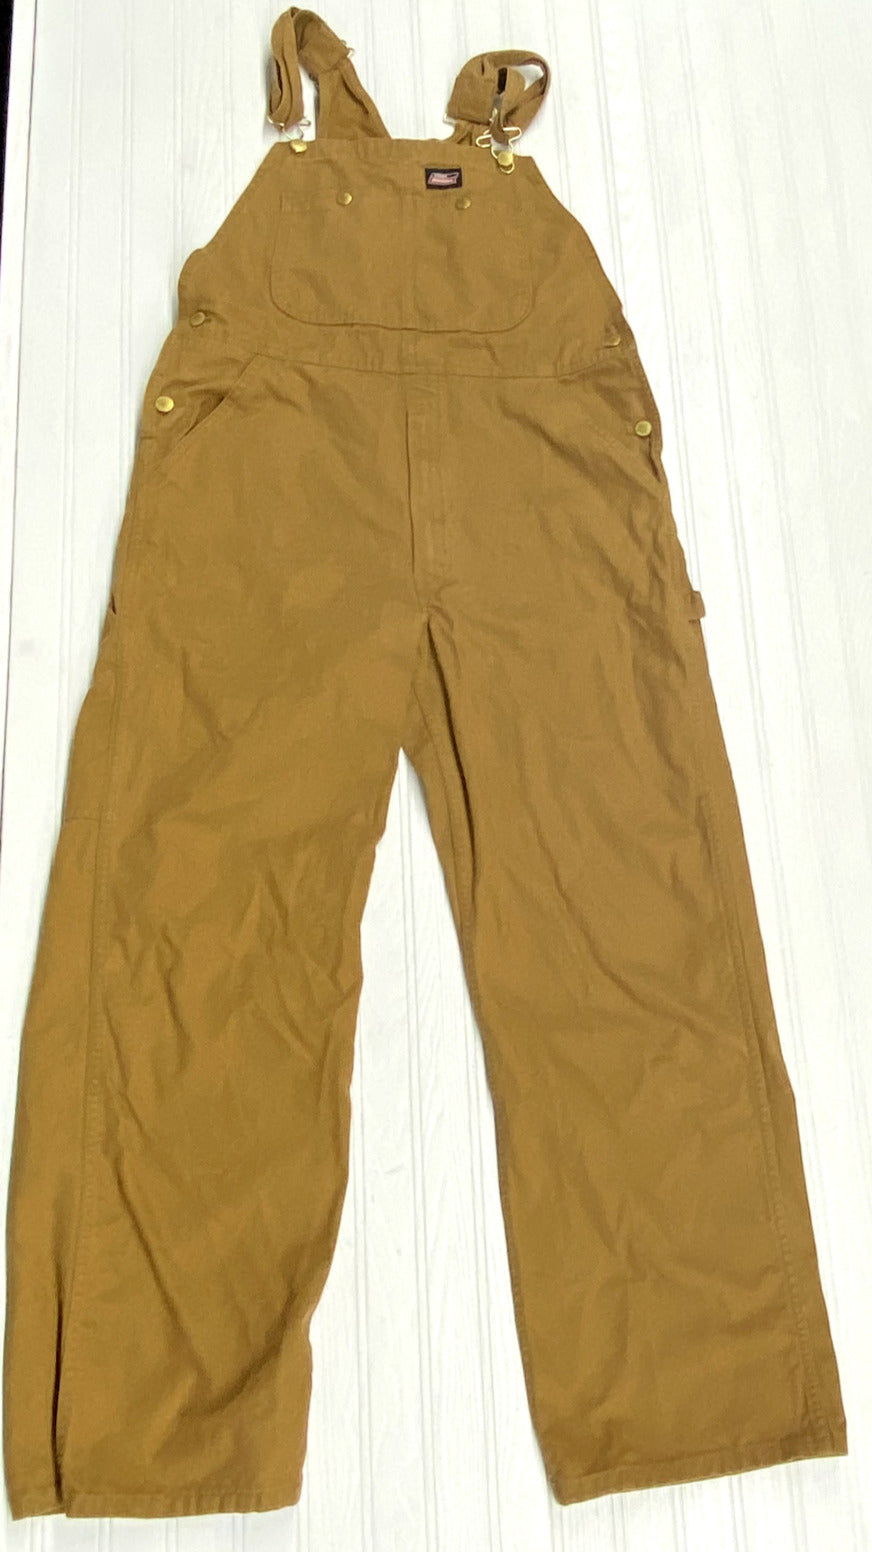 Dickies Classic Bib Workwear Tan Khaki Overalls No Sleeve Men Size 32 X 32